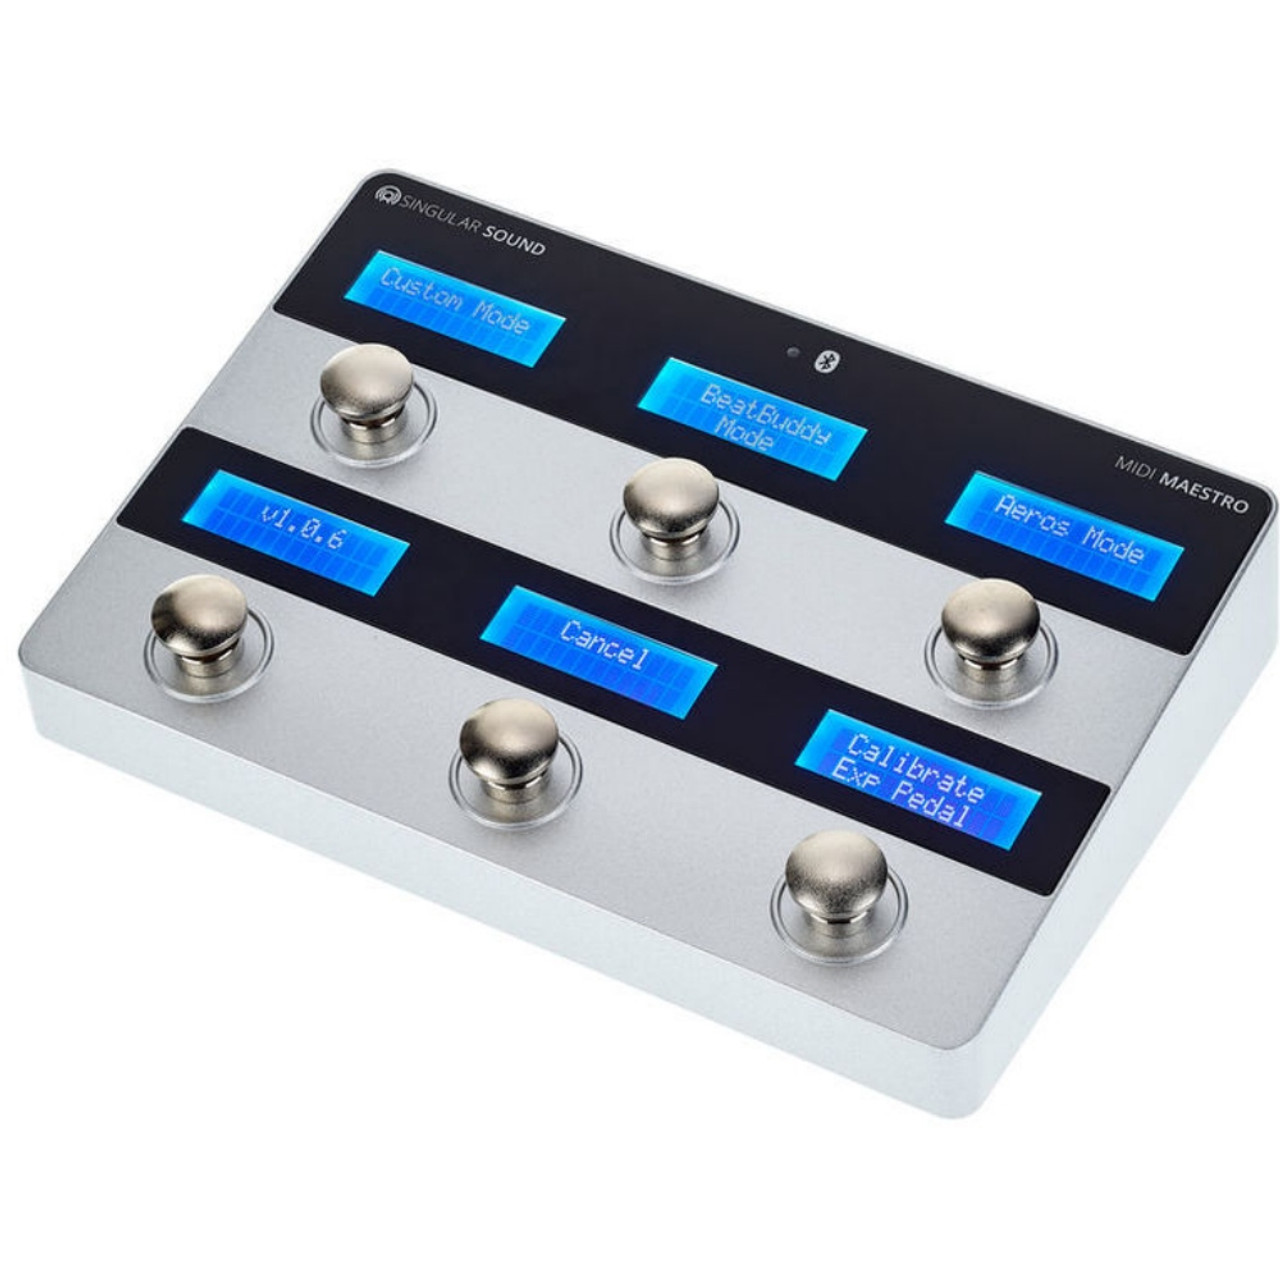 MIDI Maestro Gold Edition: the Easy, Customizable MIDI Foot Controller